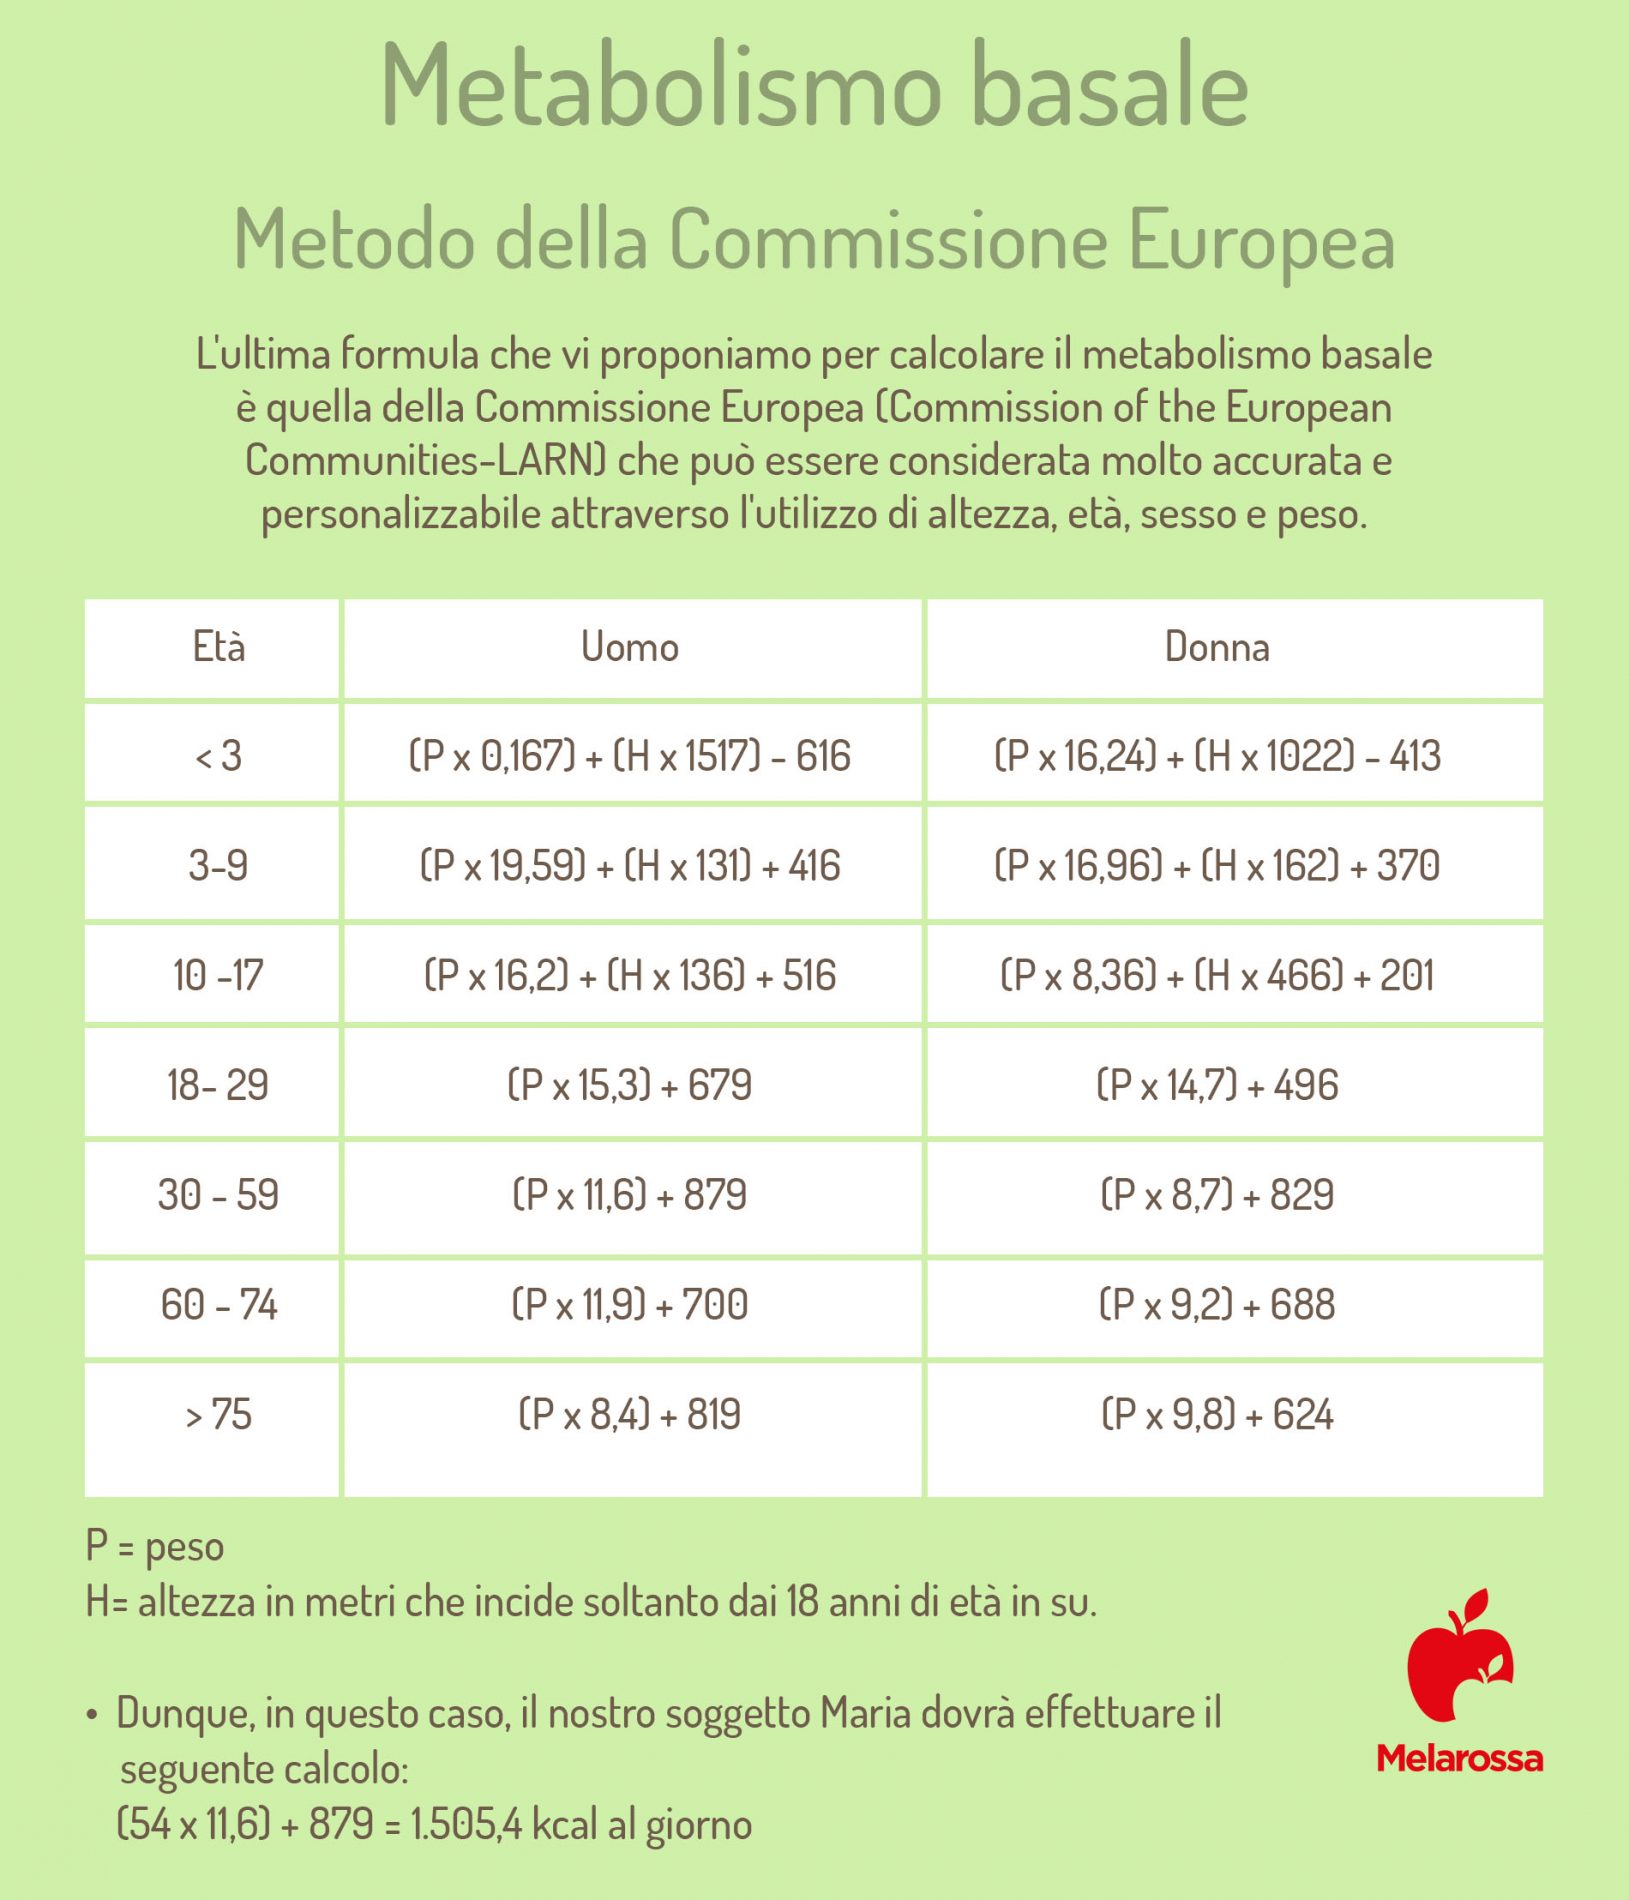 metabolismo basale: come calcolarla secondo il metodo Europeo 